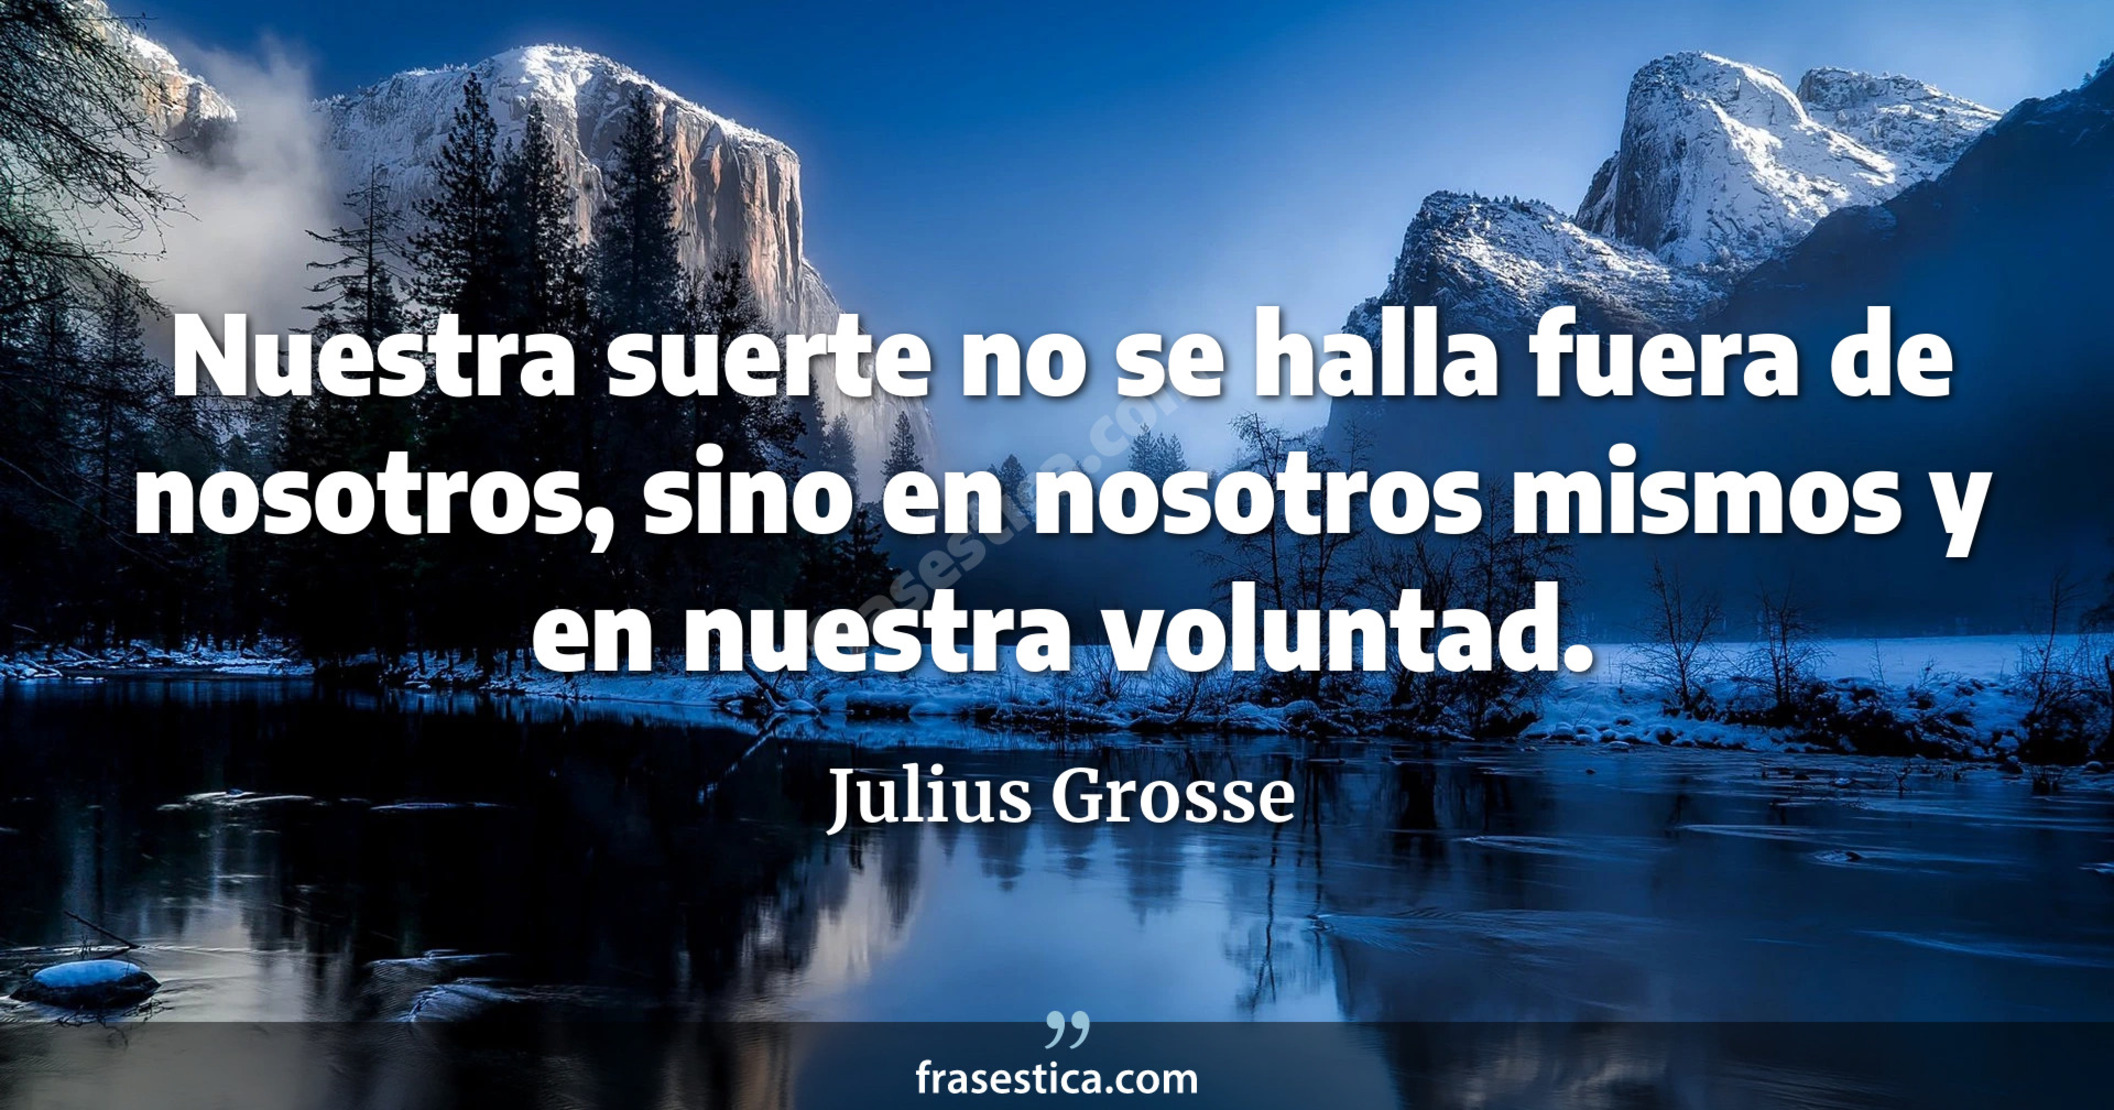 Nuestra suerte no se halla fuera de nosotros, sino en nosotros mismos y en nuestra voluntad. - Julius Grosse